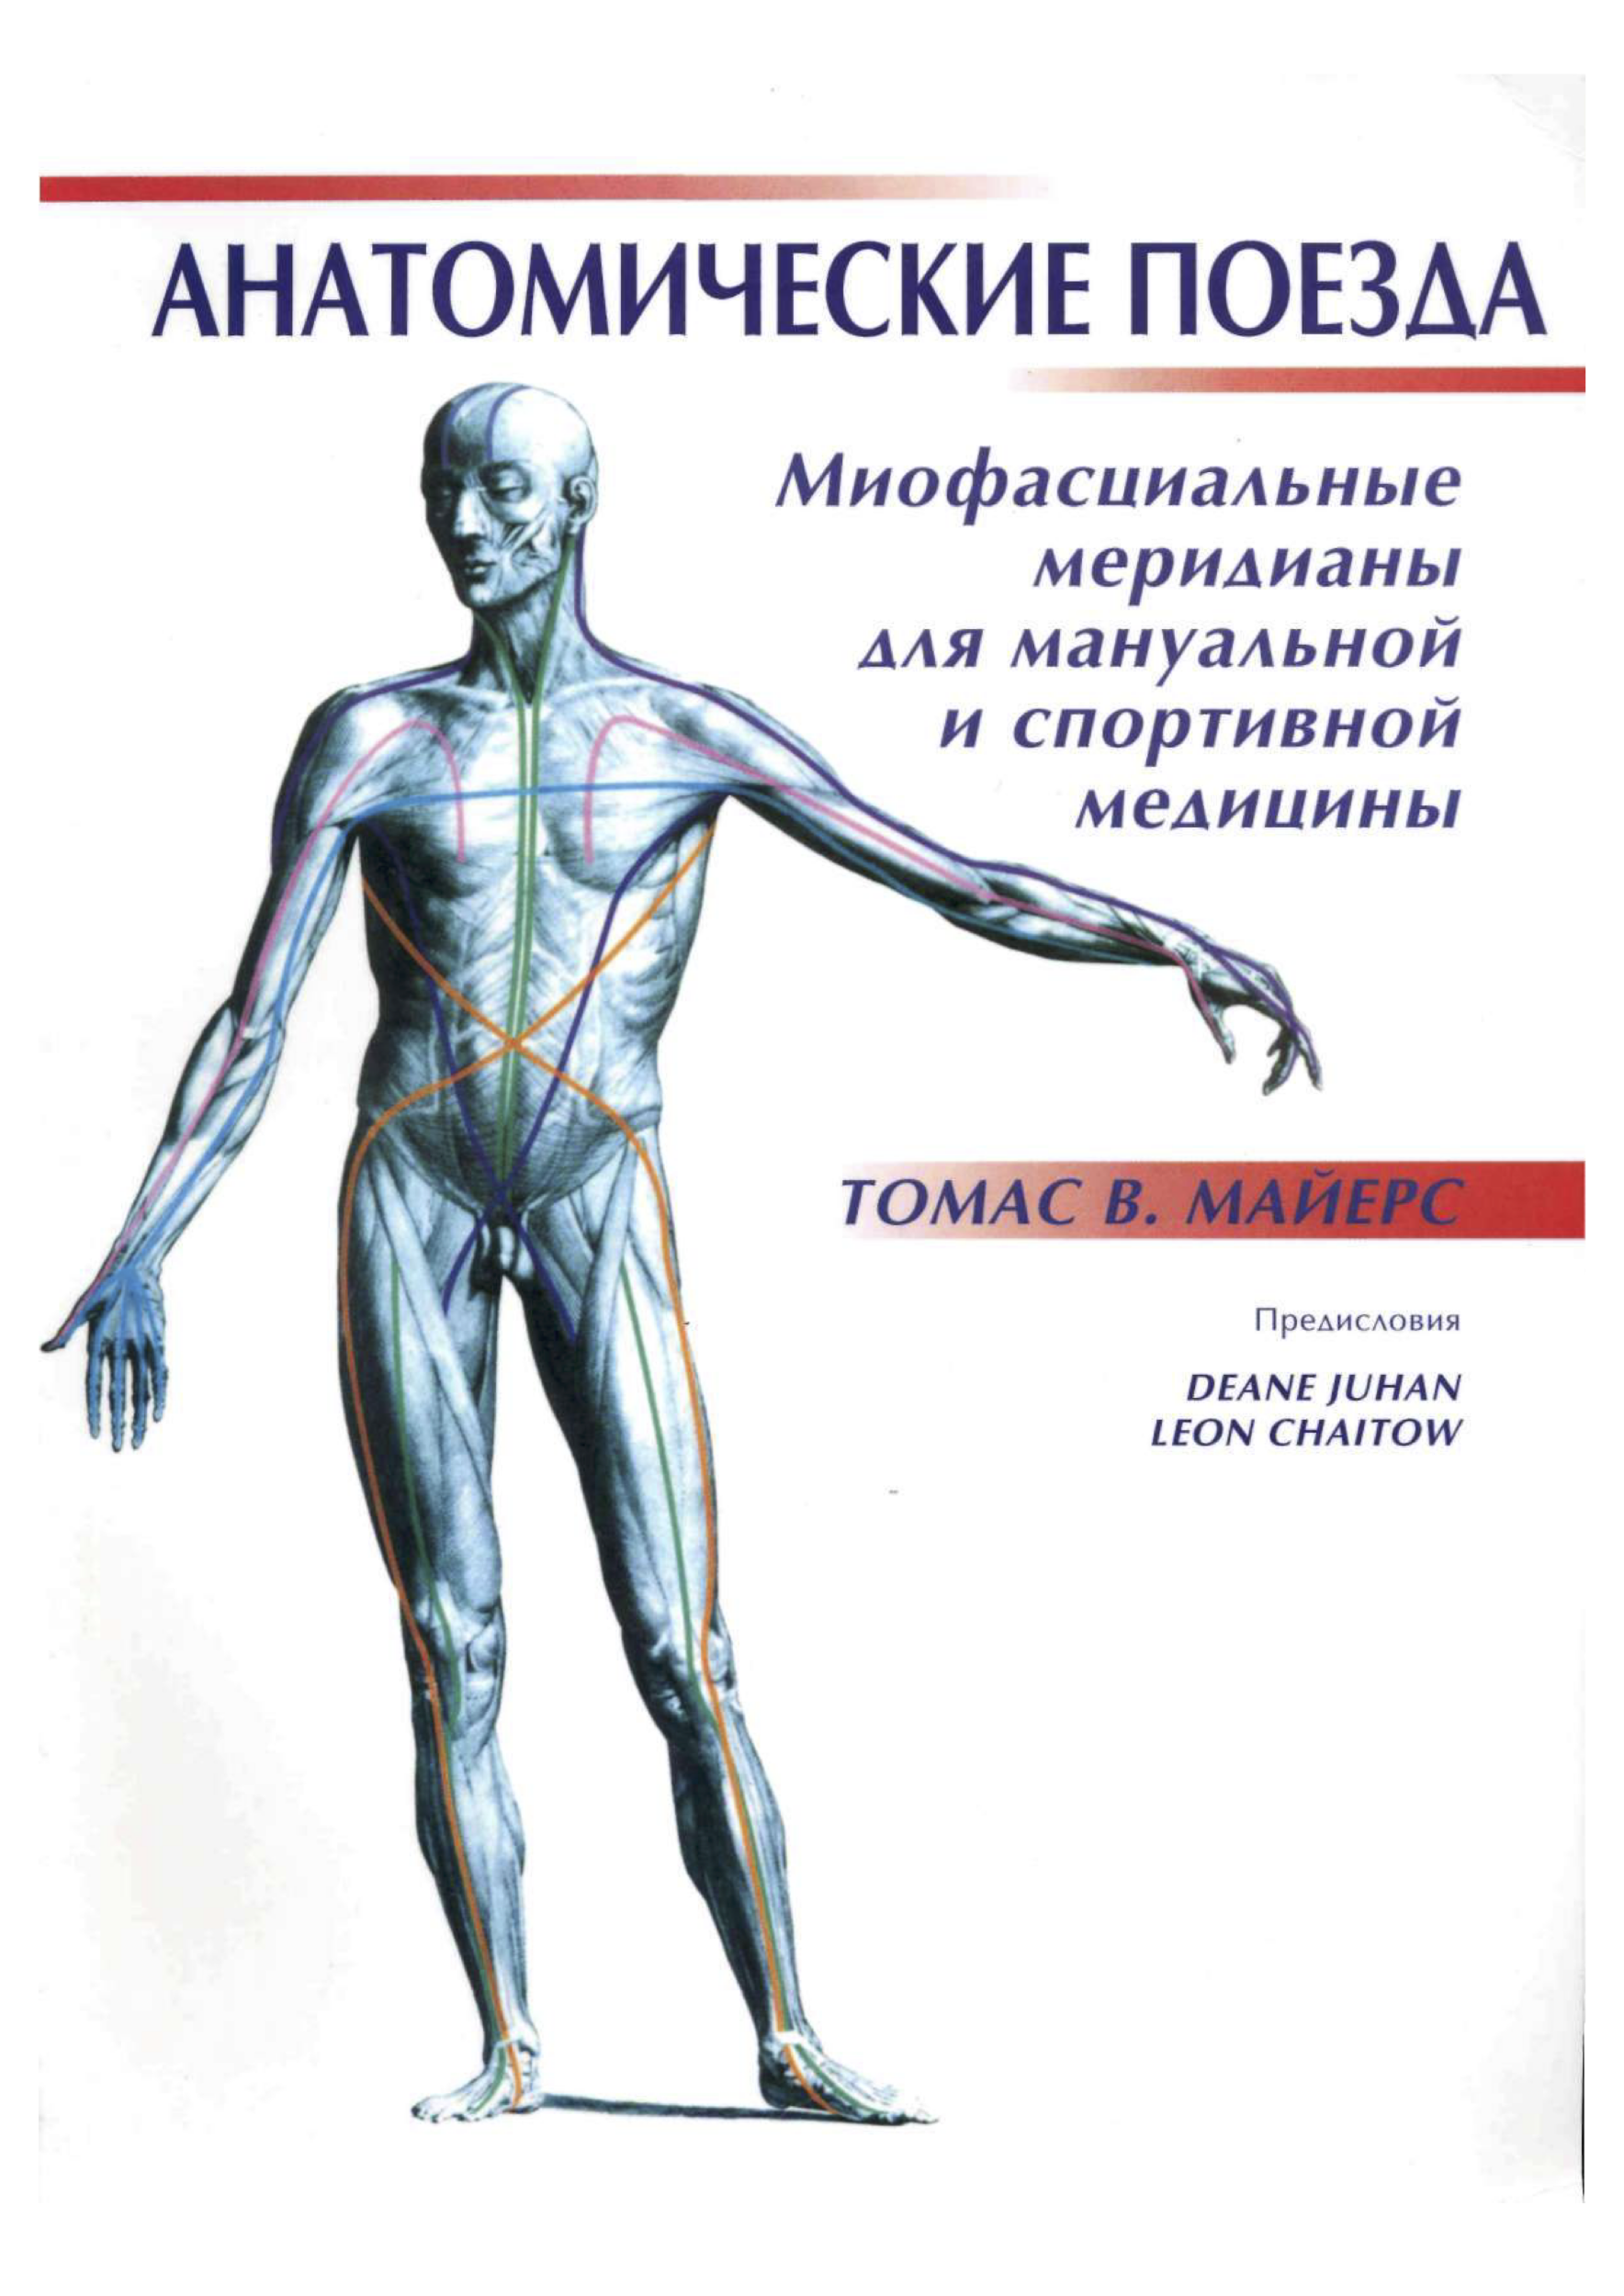 Анатомические поезда. Томас В. Майерс (2007). Автор — Томас В. Майерс. 